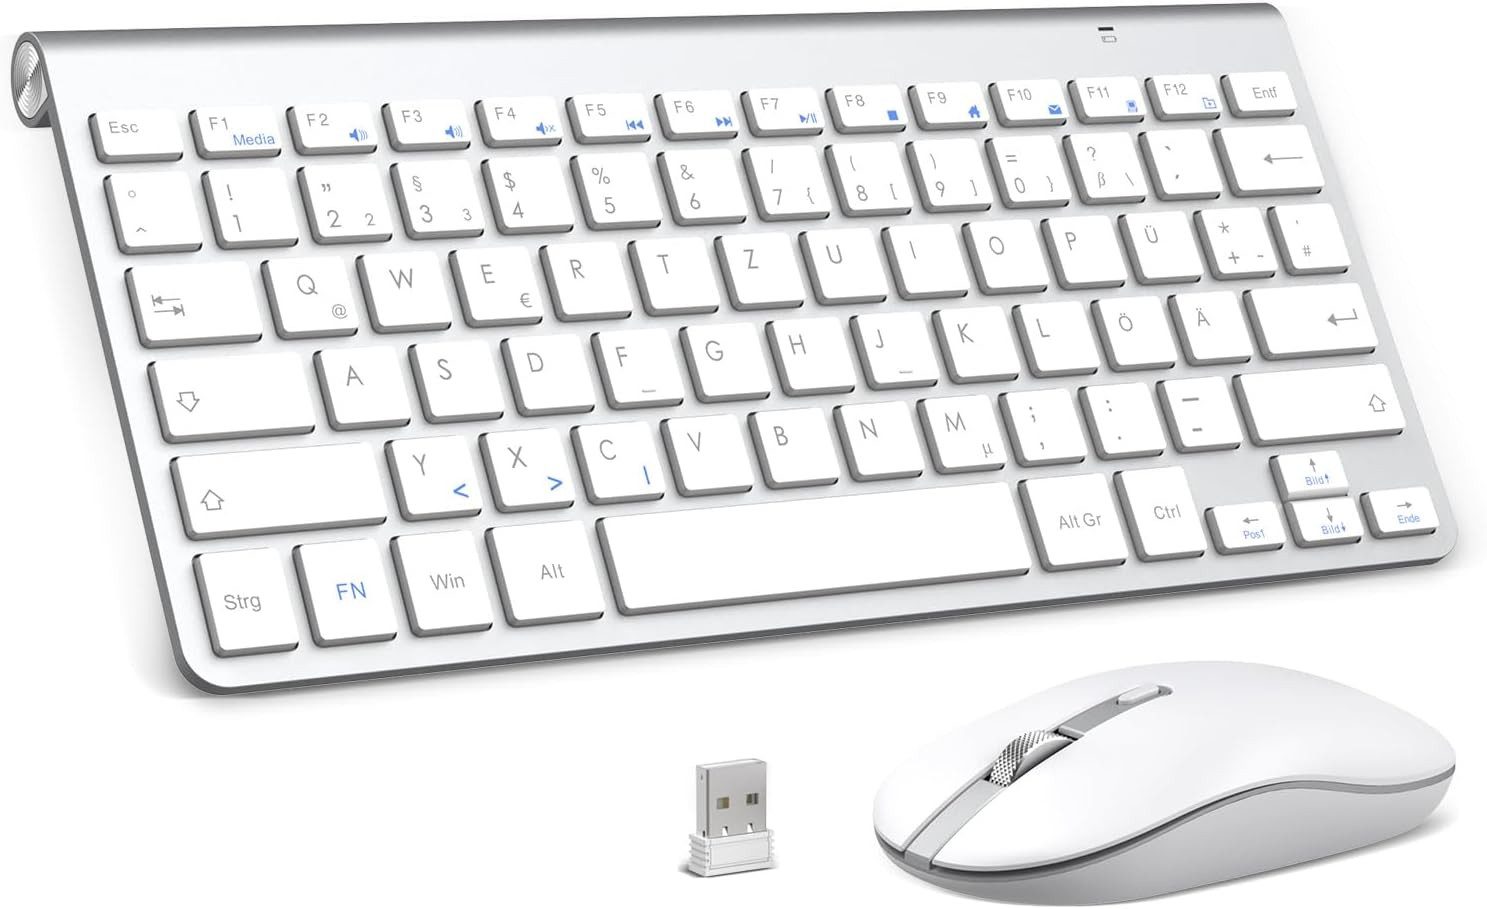 PINKCAT Mini Kabellos 2.4 GHz Tastatur- und Maus-Set, Ergonomisch Slim Deutsch QWERTZ Layout 12 FN-Tasten Leise